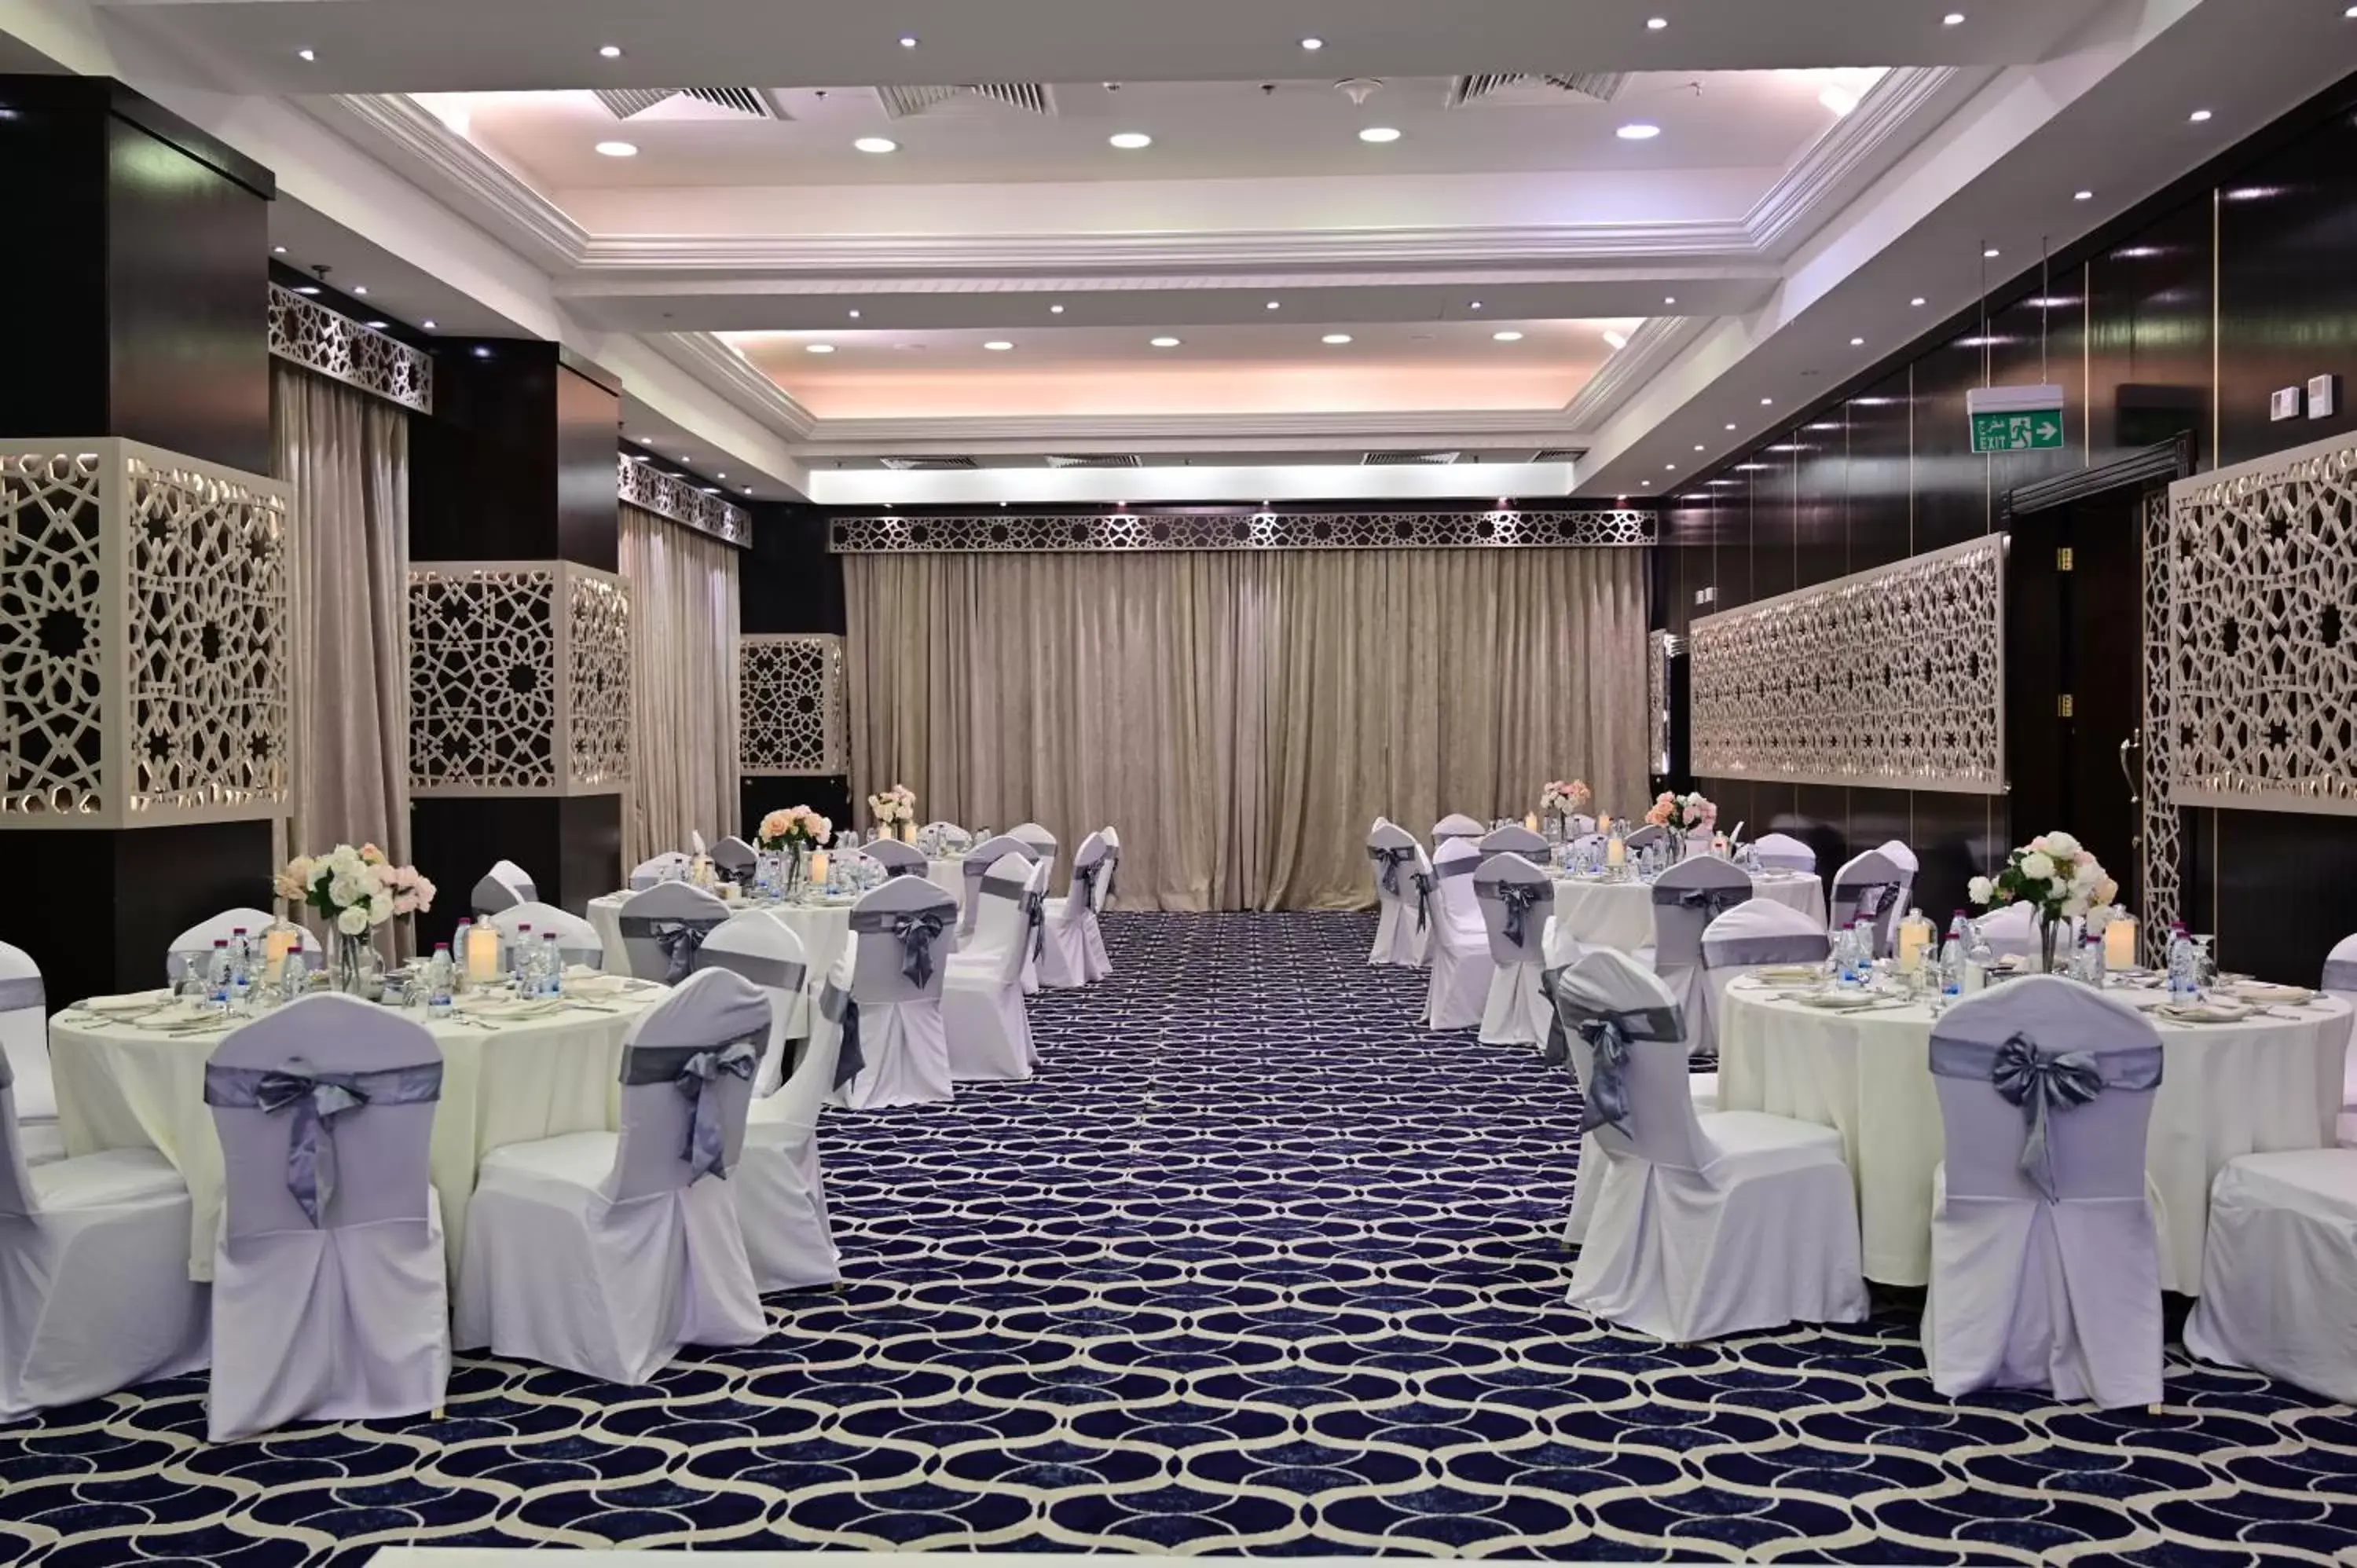 Banquet/Function facilities, Banquet Facilities in Retaj Al Rayyan